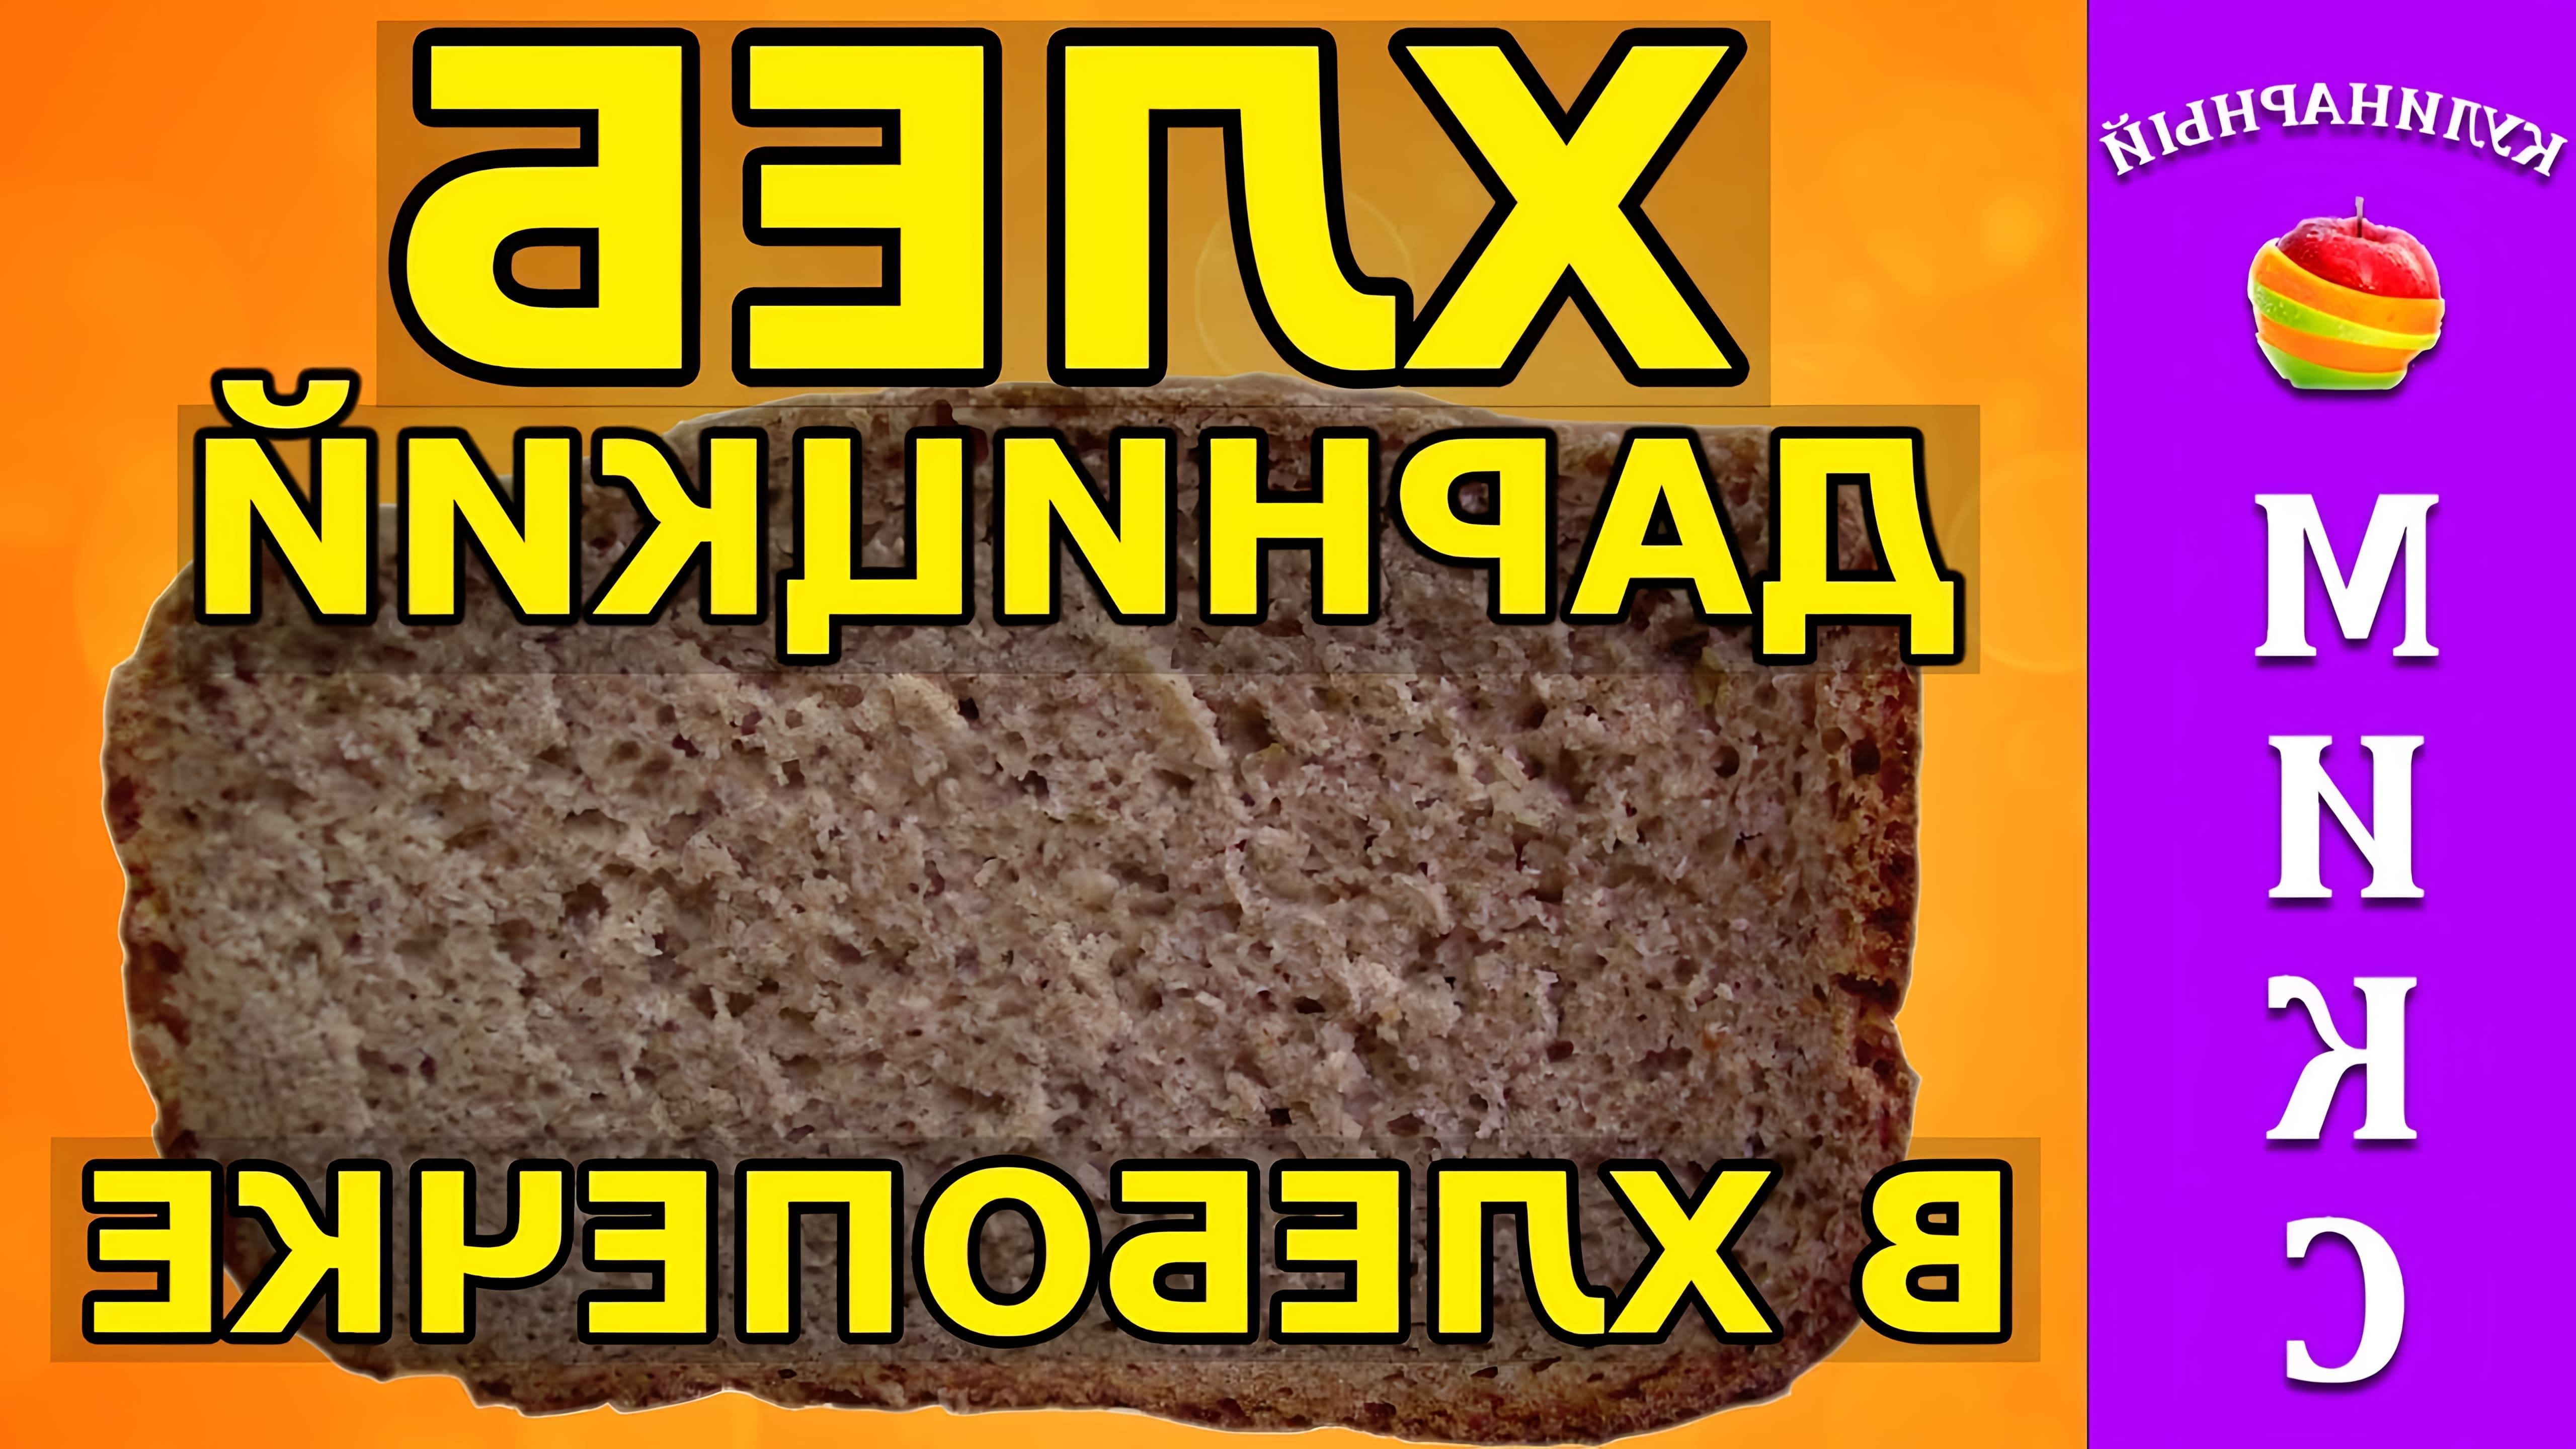 В этом видео демонстрируется рецепт ржано-пшеничного хлеба в хлебопечке, который по вкусу напоминает дарницкий хлеб